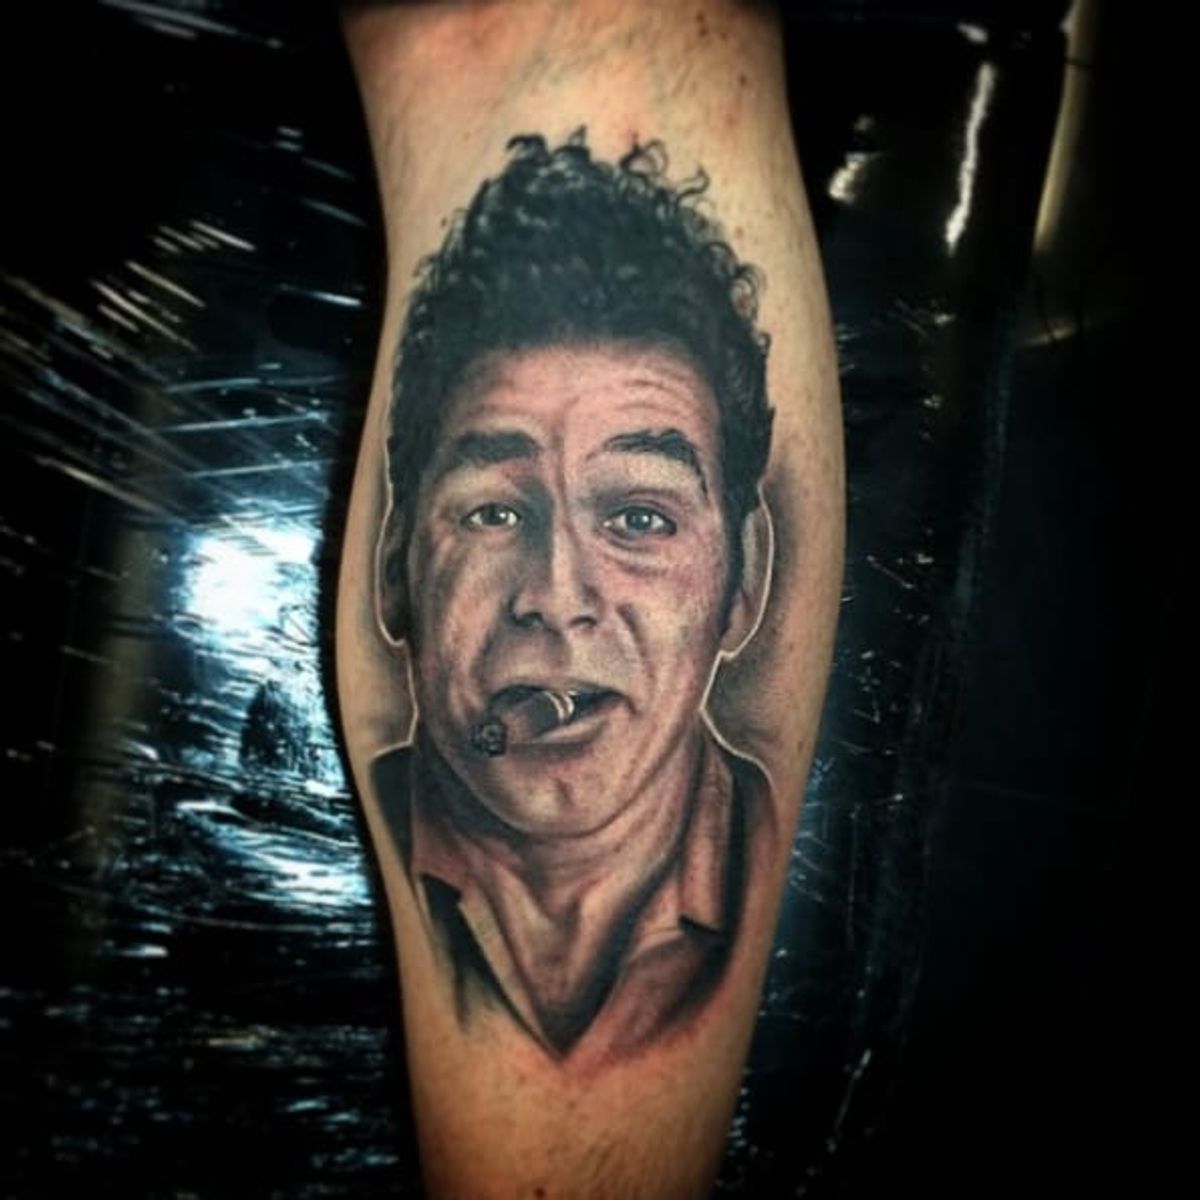 Tattoo uploaded by Joe • Kramer tattoo. #Celebrity #CelebrityPortrait # ...